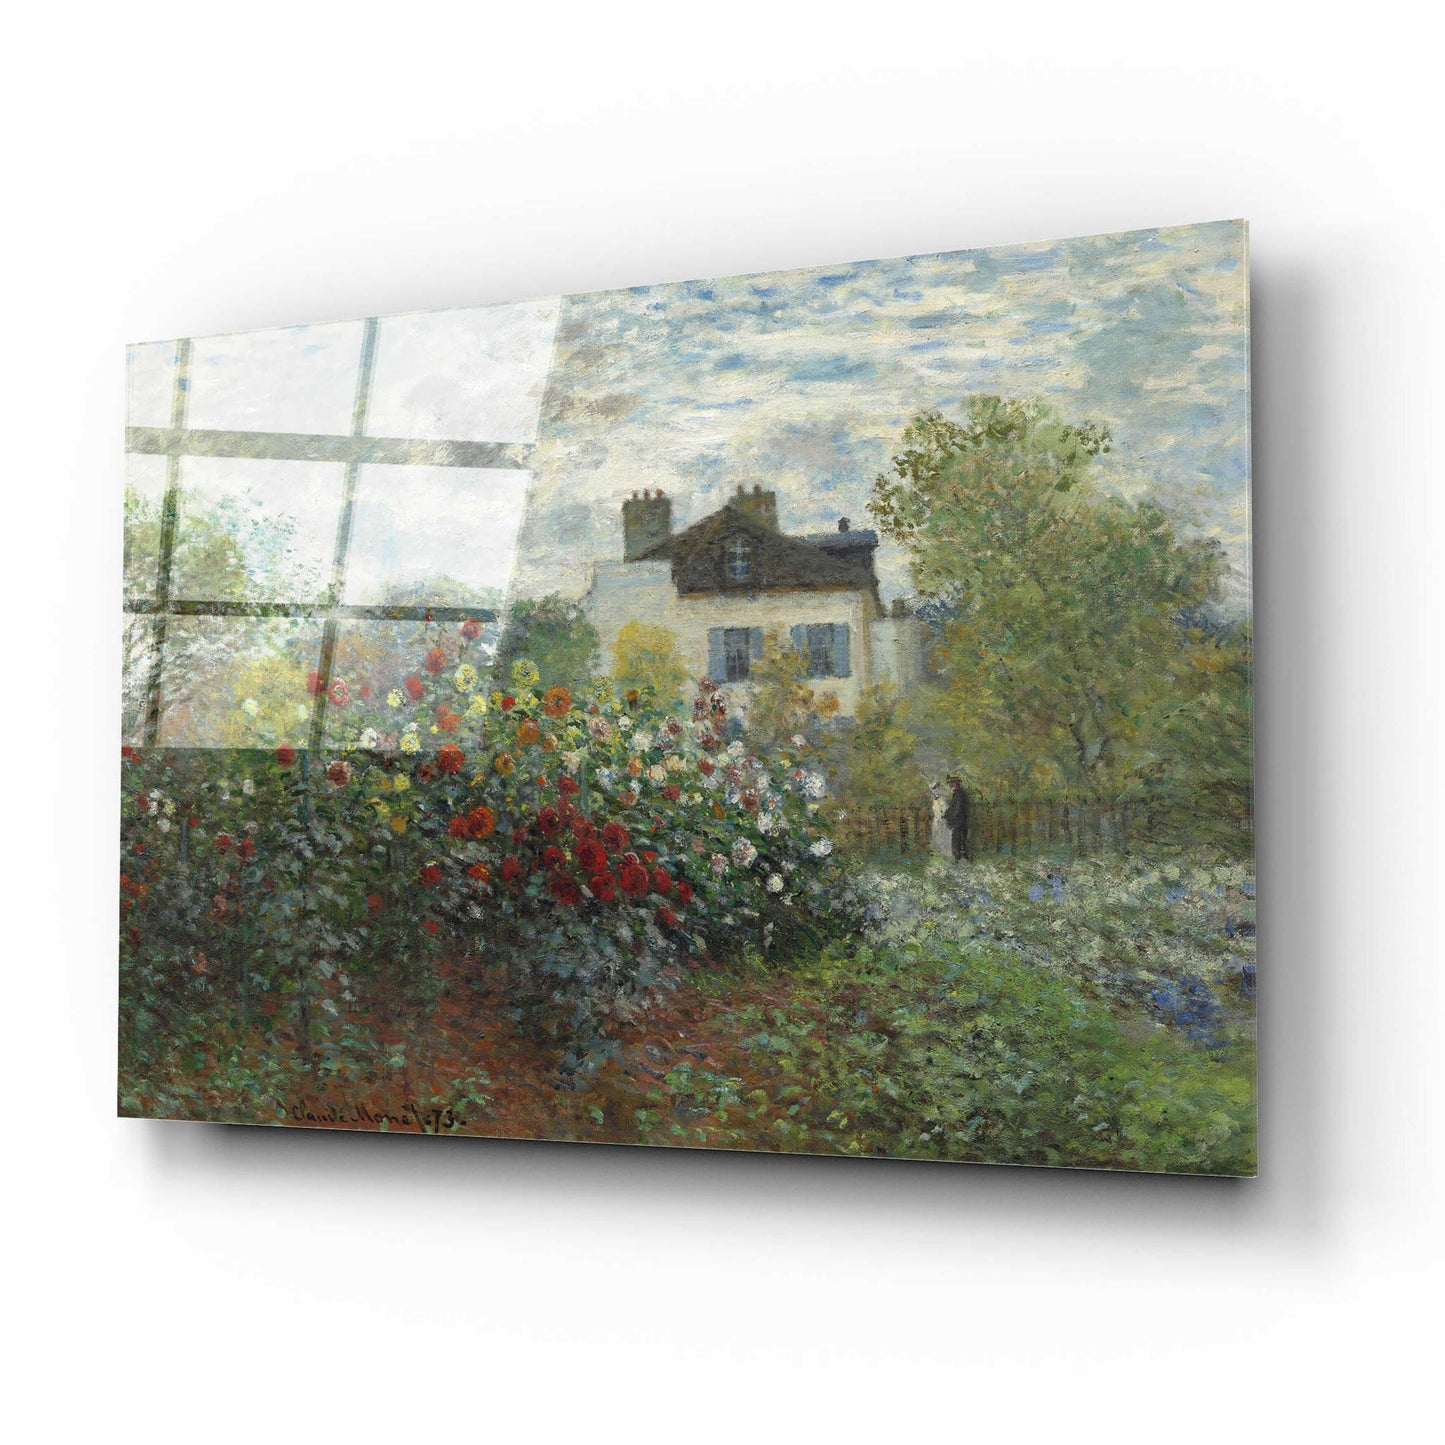 Epic Art 'The Artist’s Garden In Argenteuil' by Claude Monet, Acrylic Glass Wall Art,16x12